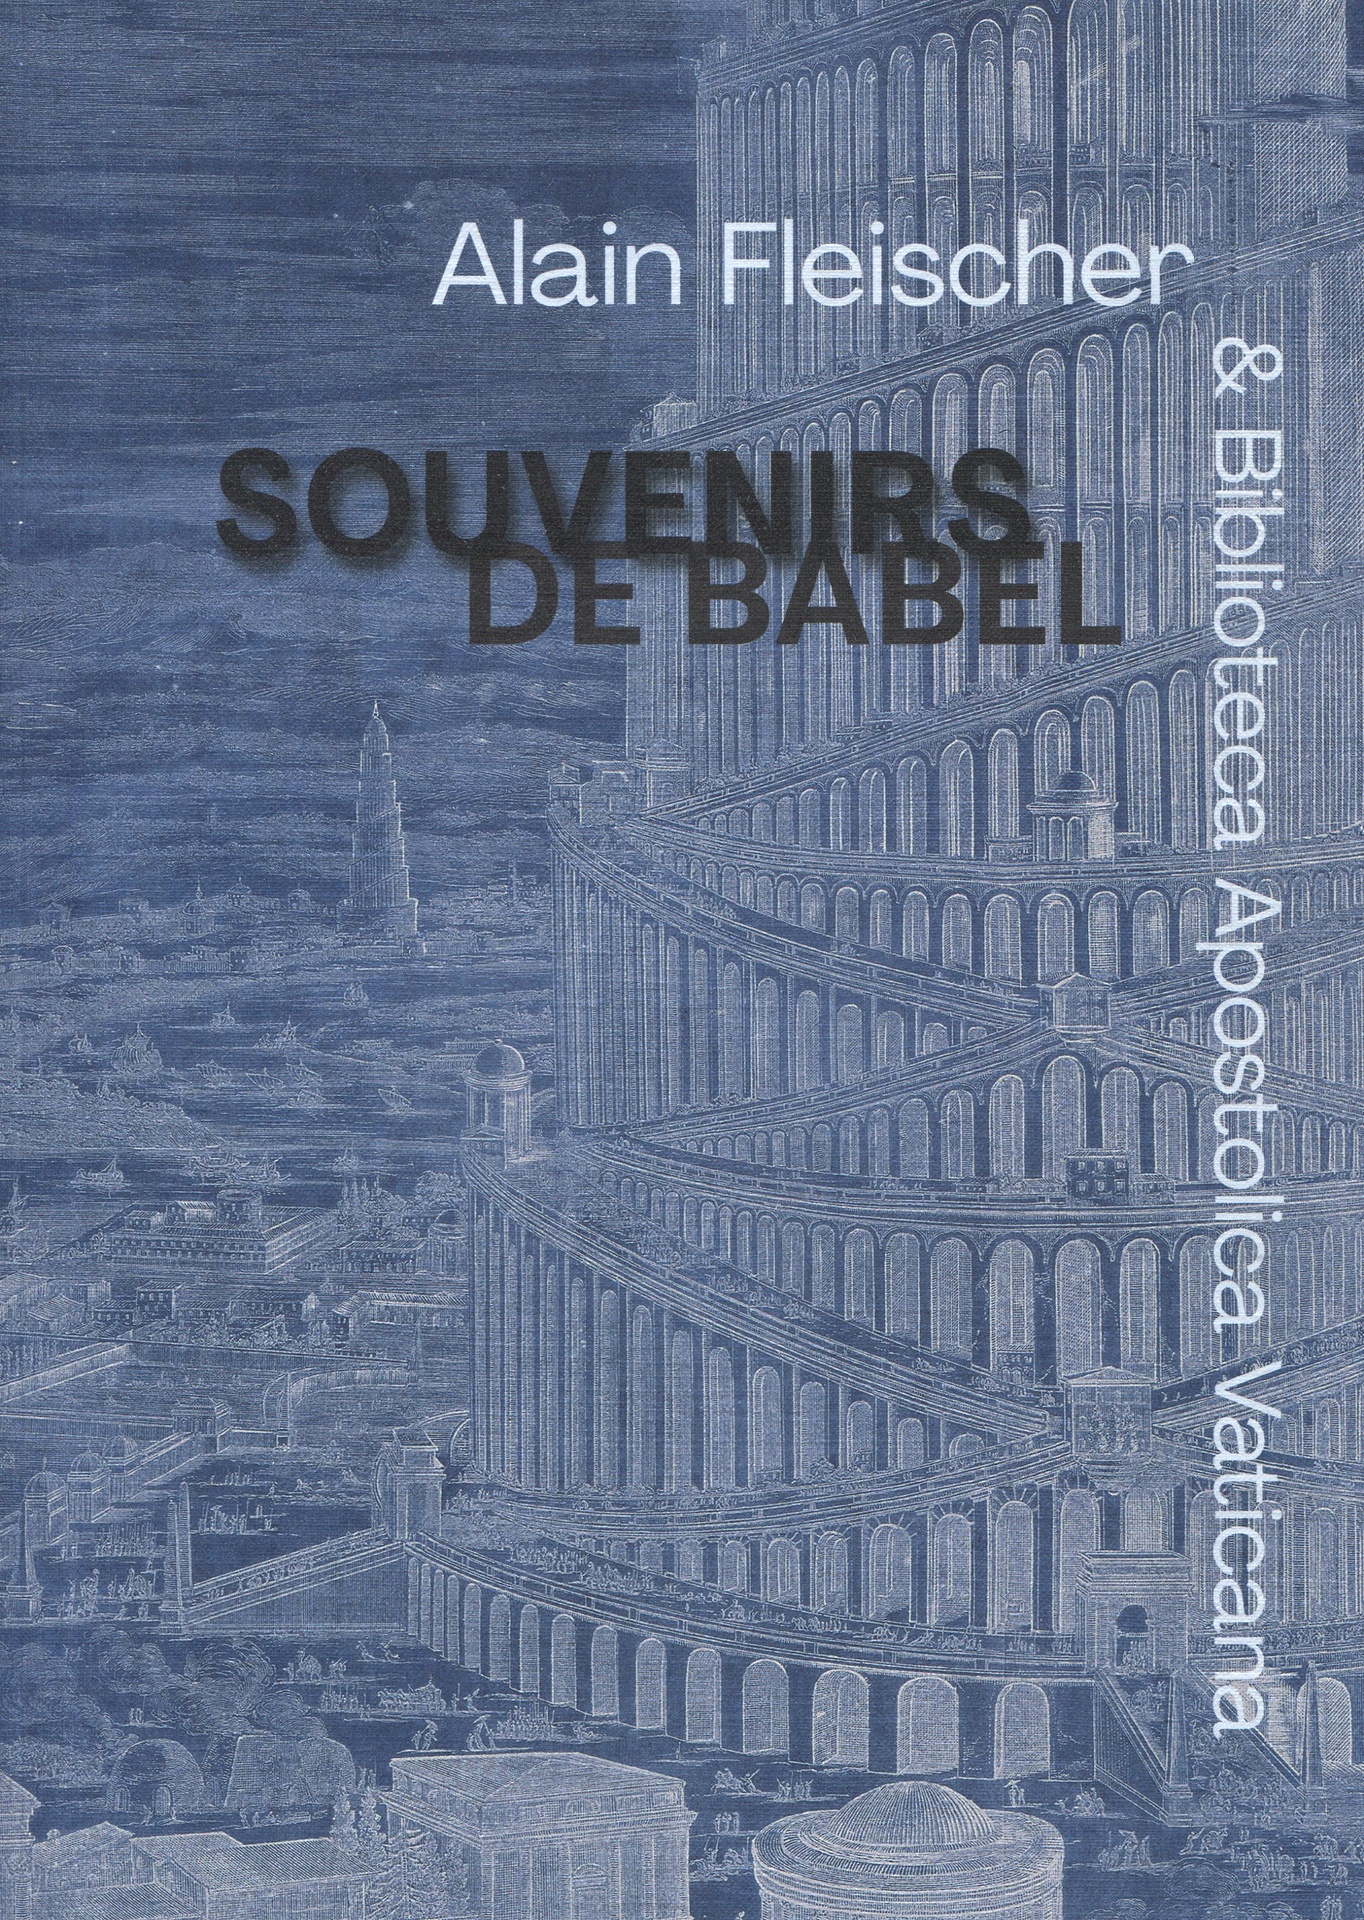 Souvenirs de Babel. Alain Fleischer & Biblioteca Apostolica Vaticana.